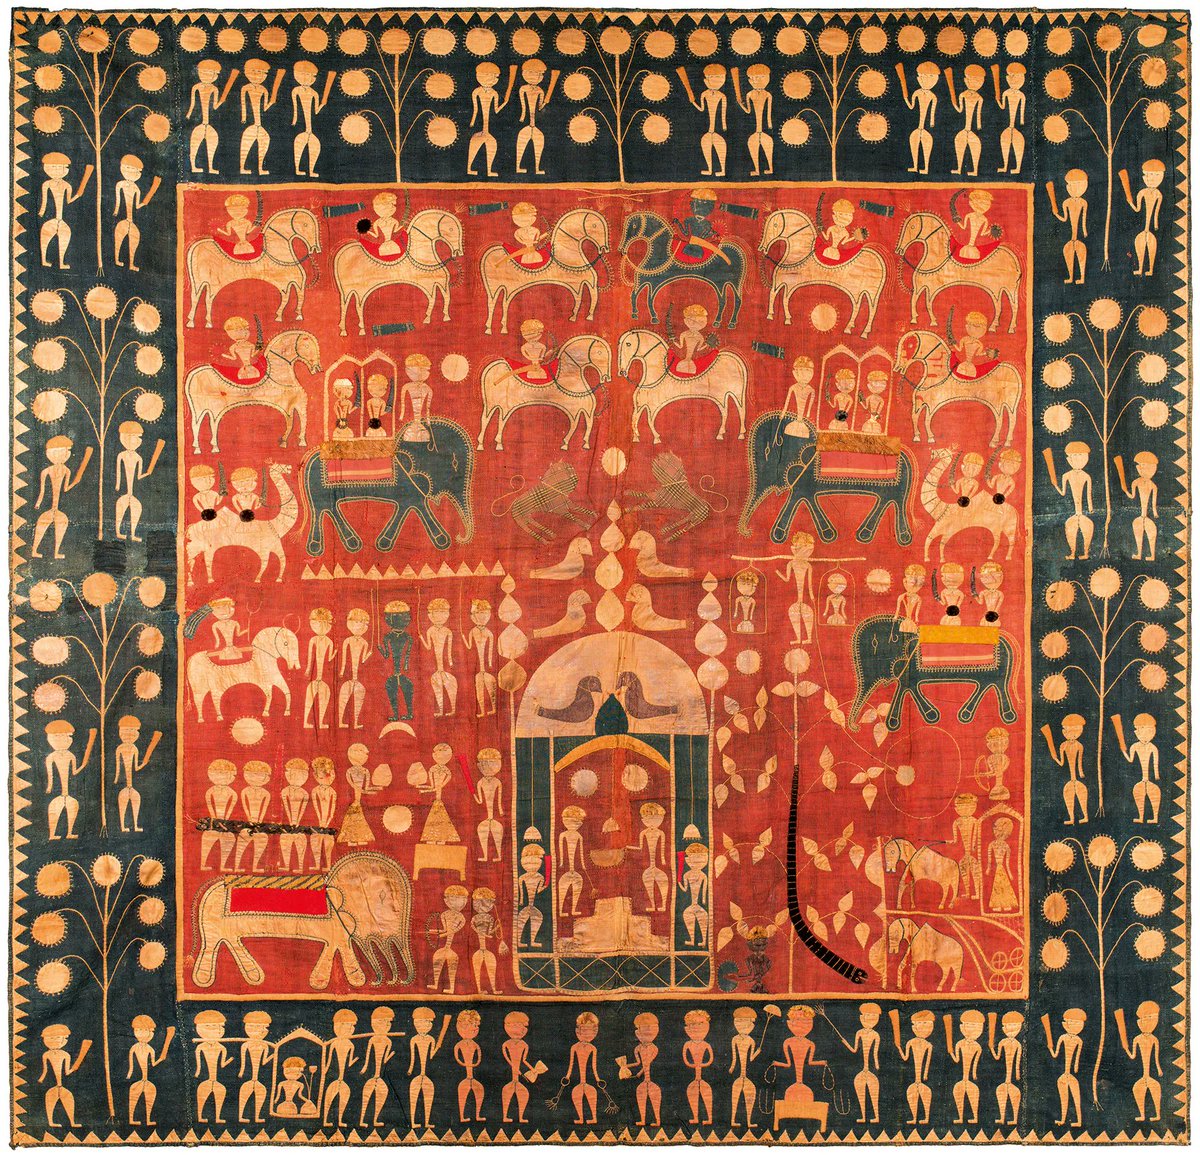 インドのテキスタイル
ジョージ ワシントン大学博物館とテキスタイル博物館による「Indian textiles 1000 years of art and design」展(2022)より。本展では、8 世紀から 20 世紀初頭の期間に作られたインドの宮廷用の織物、民俗刺繍など様々なテキスタイルが展示された。 